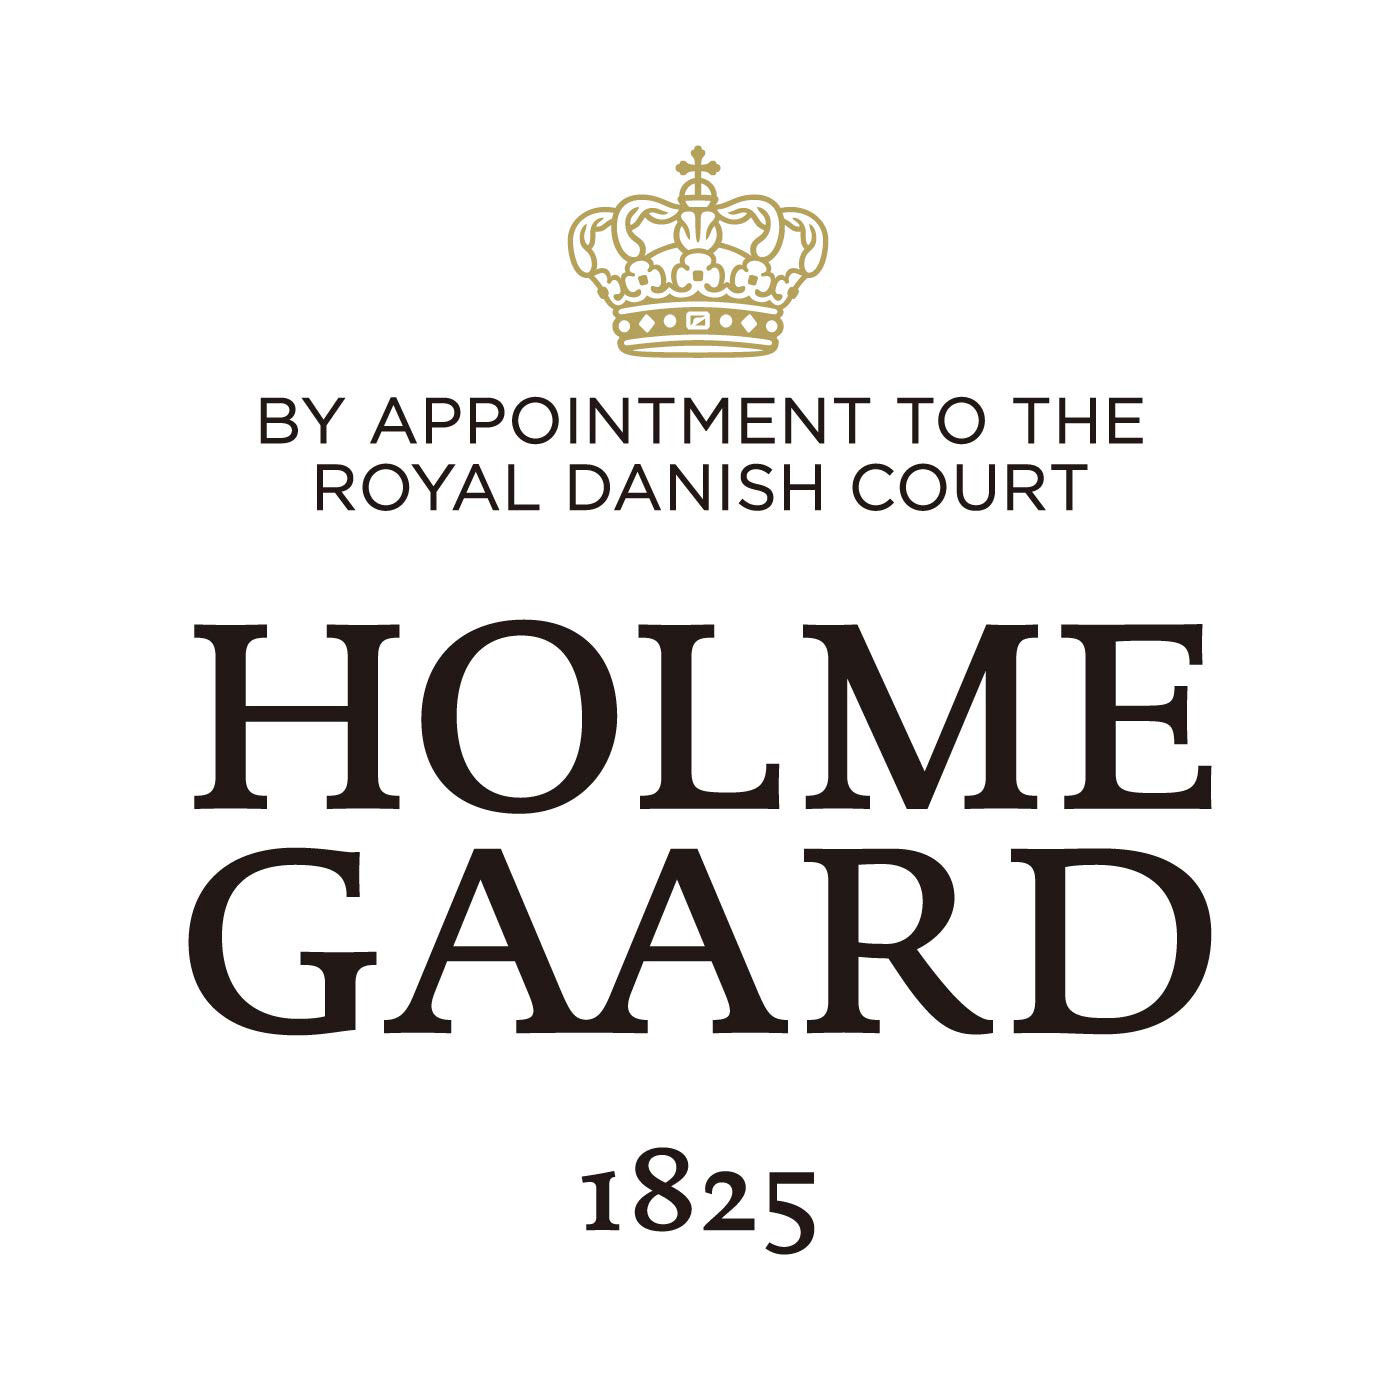 SeeMONO|北欧デザインの革ベルトと吹きガラスが素敵　マルチユースなポット〈Ｓ〉／ホルムガード|HOLMEGAARD（ホルムガード）は、1825年にデンマークに生まれた伝統あるガラスブランドです。1900年代、多くの芸術家が手掛け始めるホルムガードの商品は、そのクオリティの高さからデンマーク王室 御用達ブランドに選ばれました。熟練の職人たちによる吹きガラス製法で生み出されるユニークなデ ザインのガラス製品は世界中の美術館に所蔵されています。